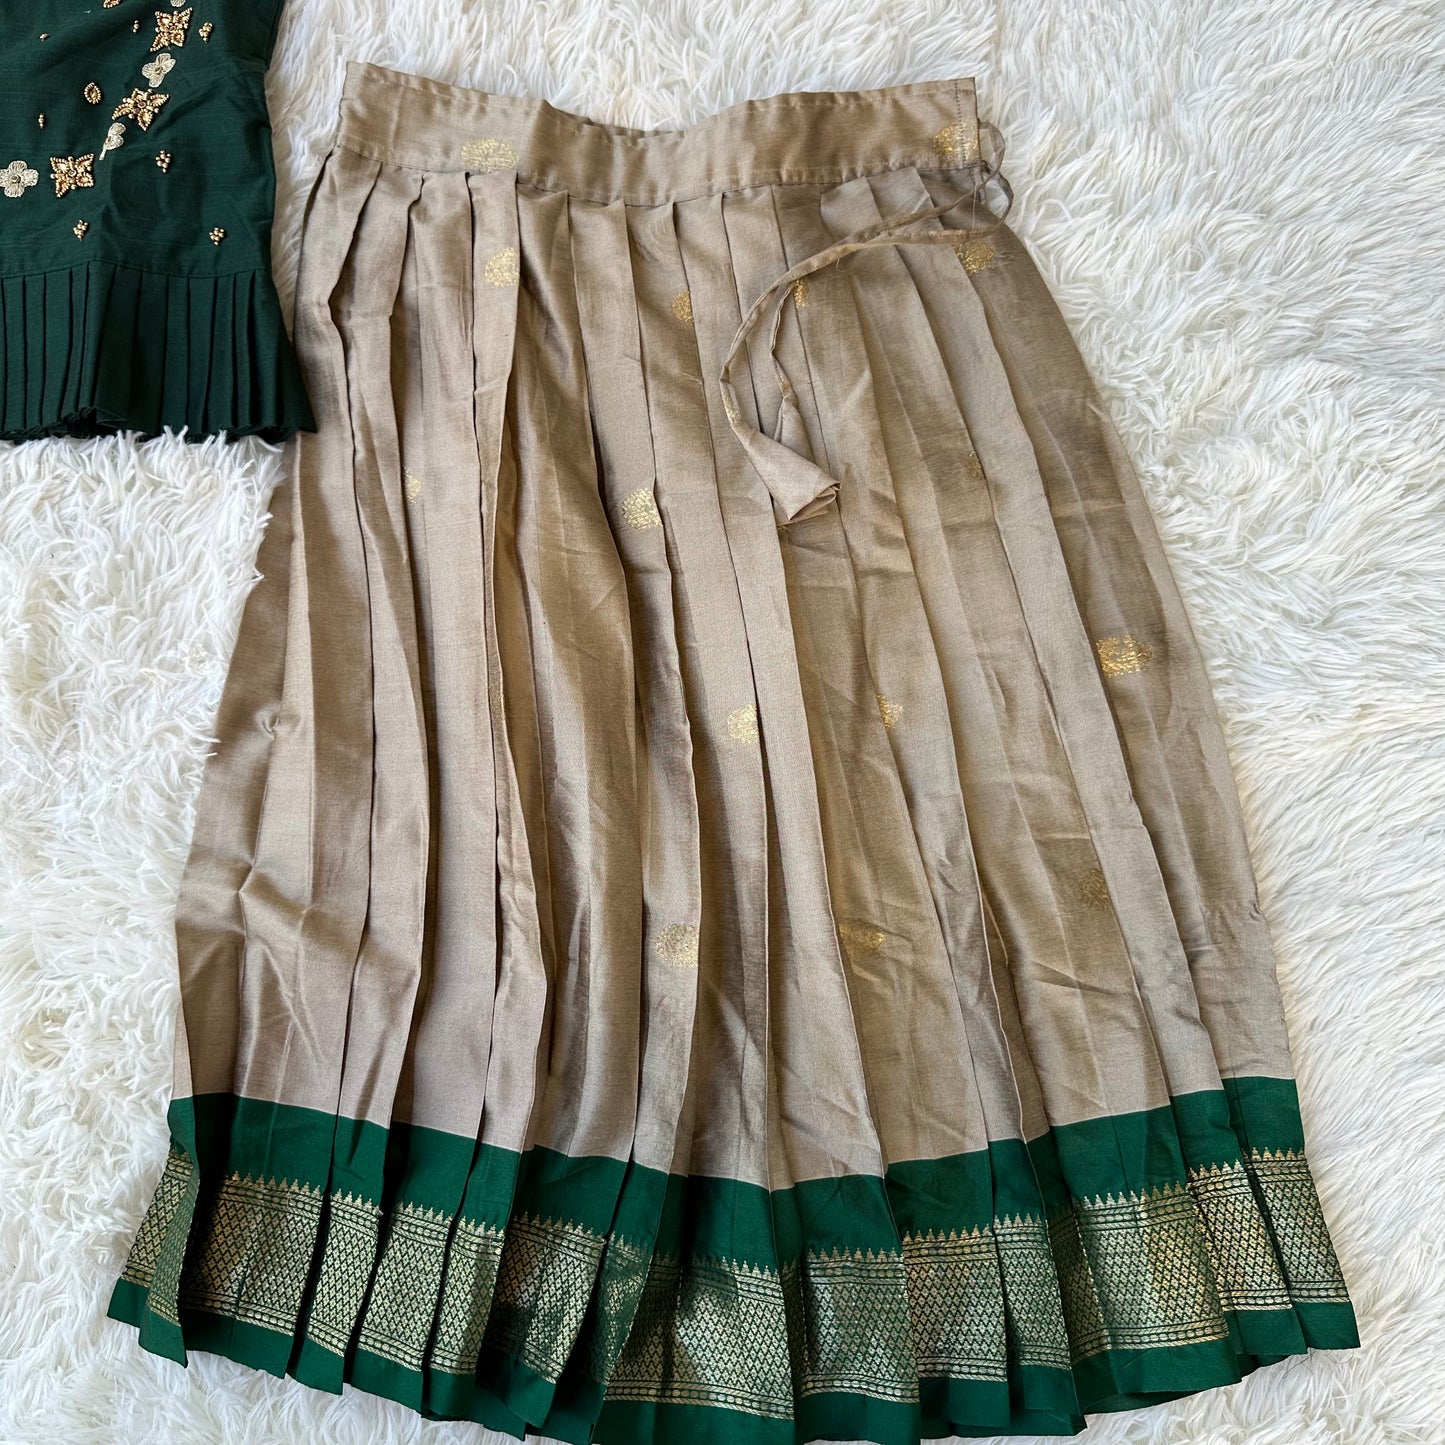 Stylish Fusion: Gray Paithani Silk Skirt, Dark Green Aari Top